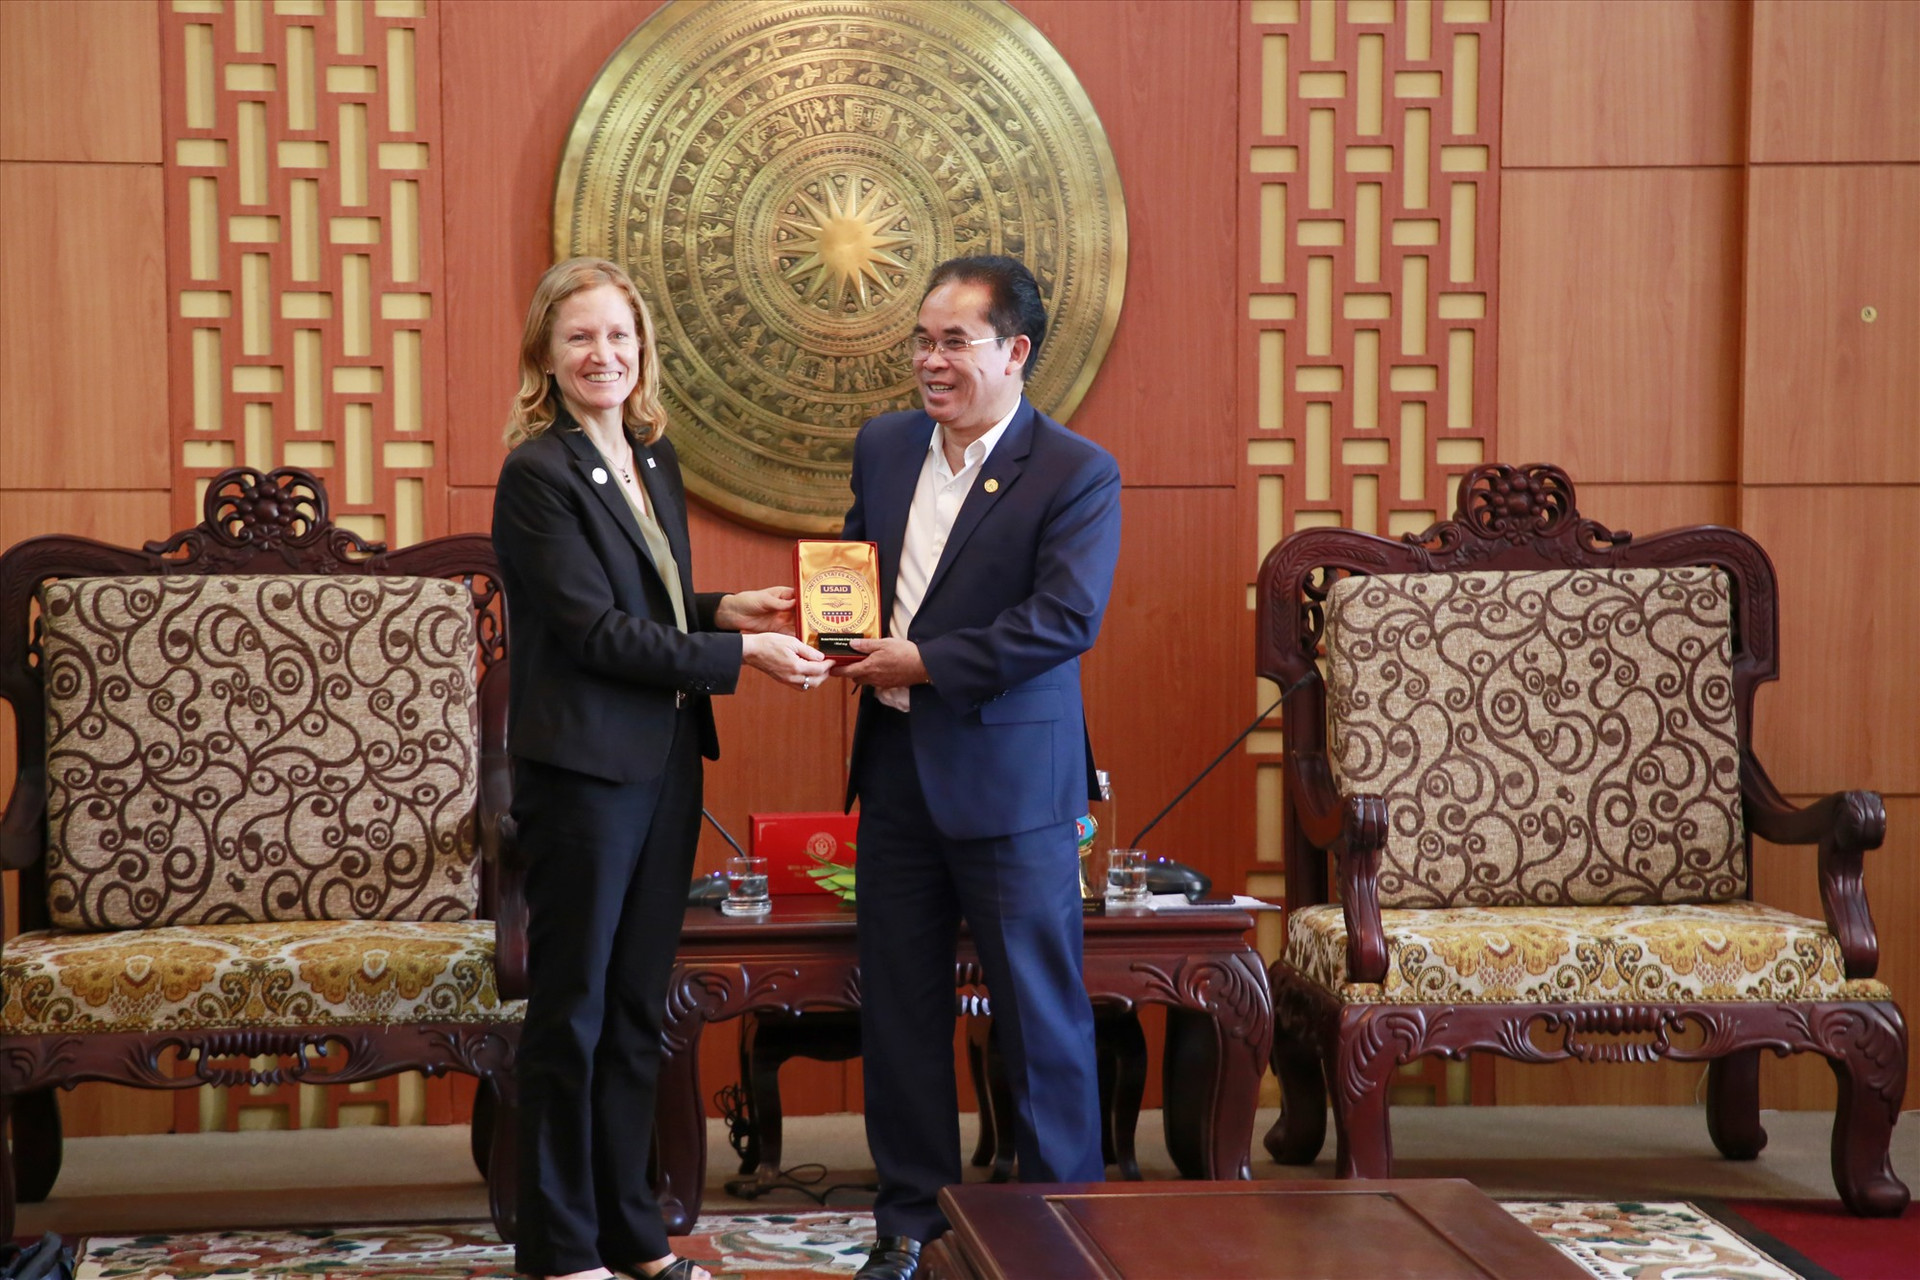 Phó Chủ tịch UBND tỉnh Trần Anh Tuấn tặng biểu trưng của Quảng Nam cho bà Aler Grubbs - Giám đốc USAID tại Việt Nam nhân buổi làm việc về dự án Hòa nhập 1. Y.C